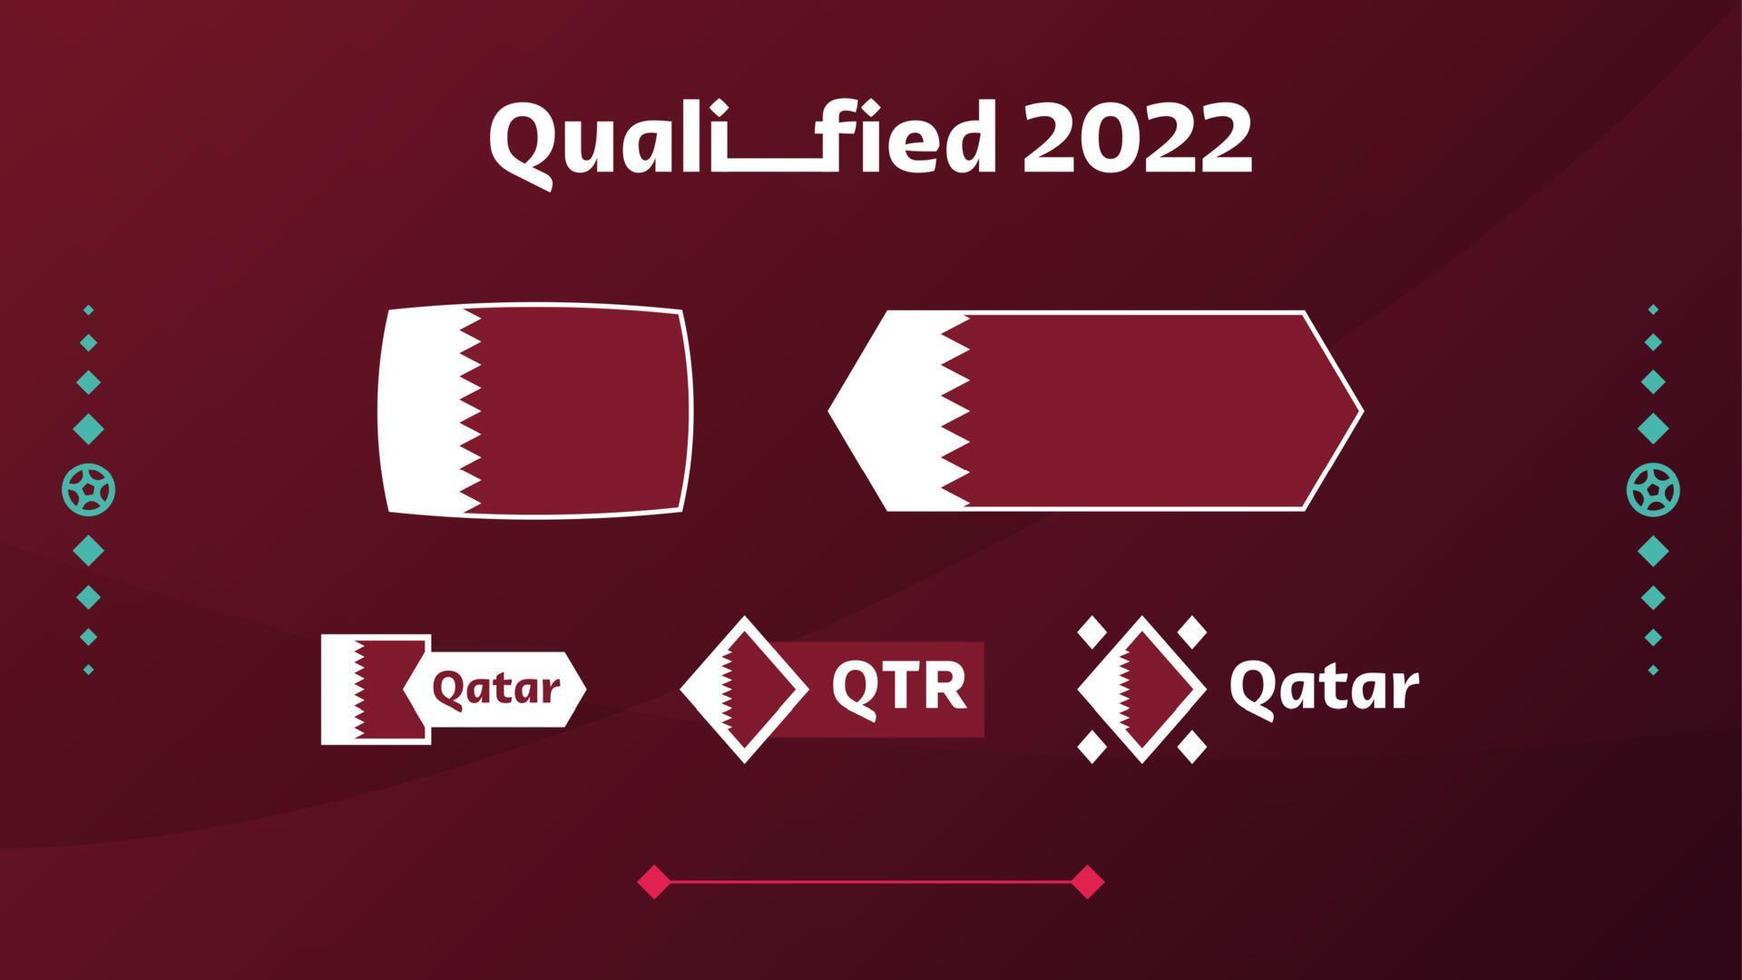 uppsättning av Qatar flagga och text på 2022 fotbollsturnering bakgrund. vektor illustration fotboll mönster för banner, kort, webbplats. vinröd färg nationalflagga qatar